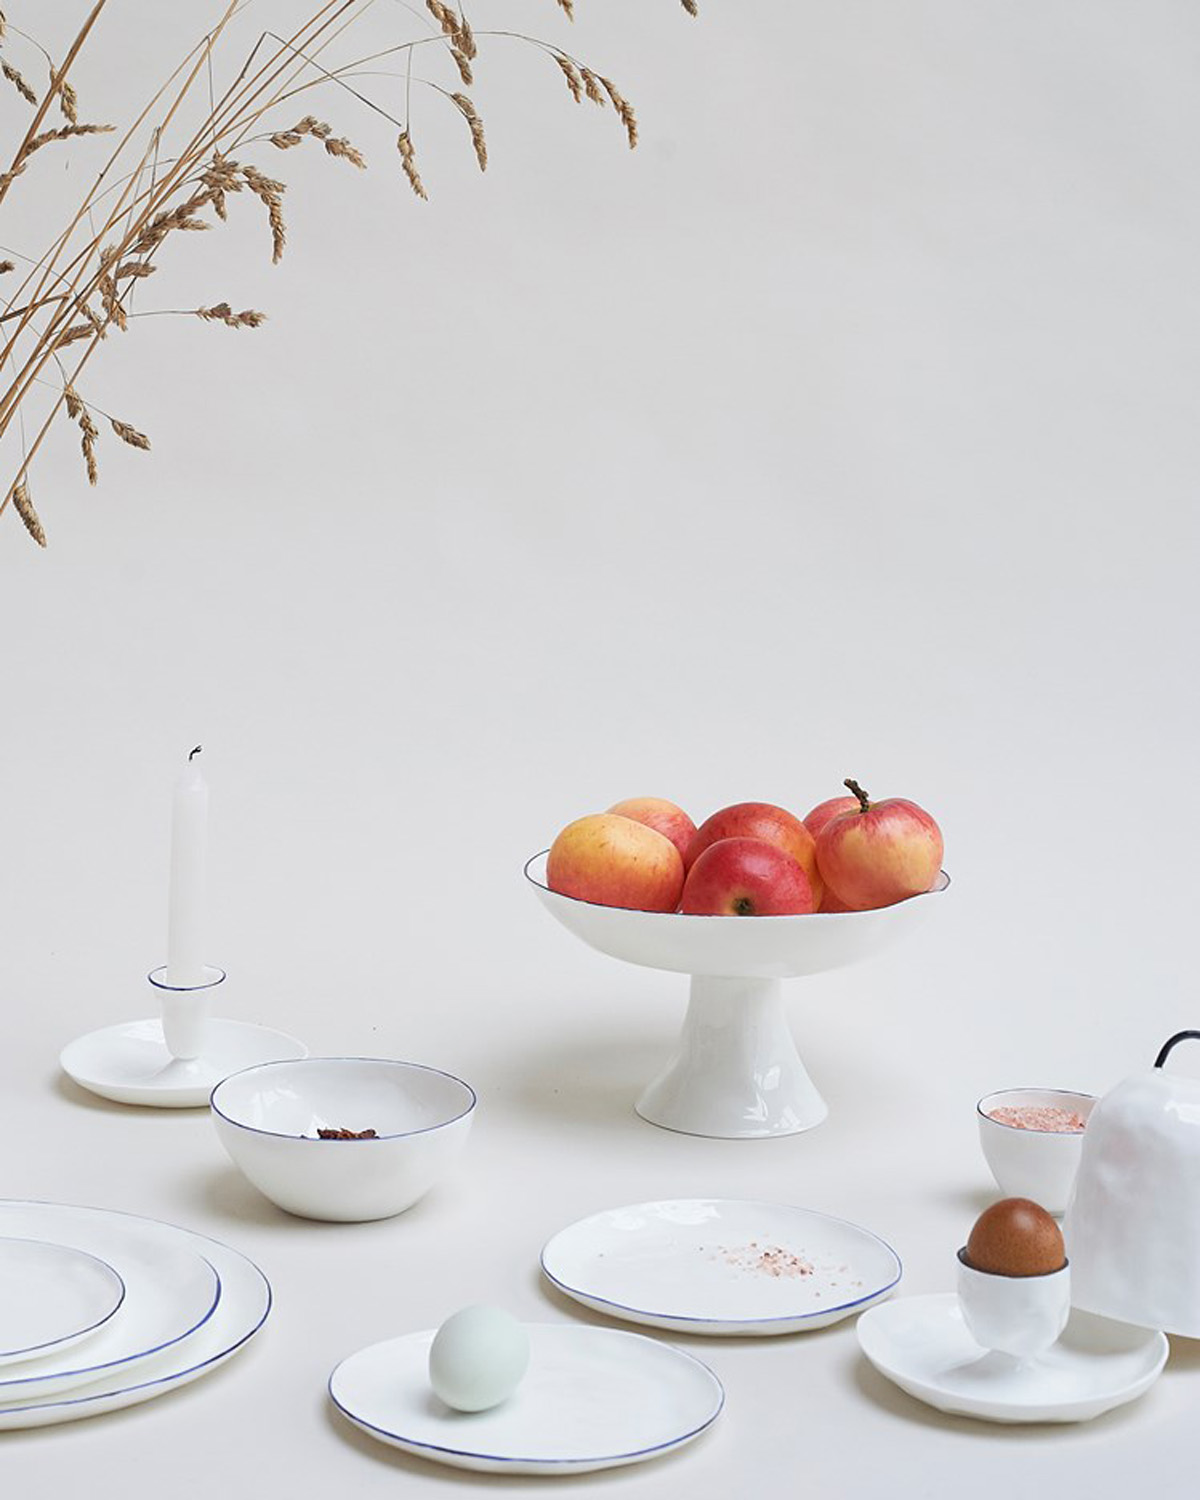 Dining table by Feldspar - artisinal ceramics handmade in the UK